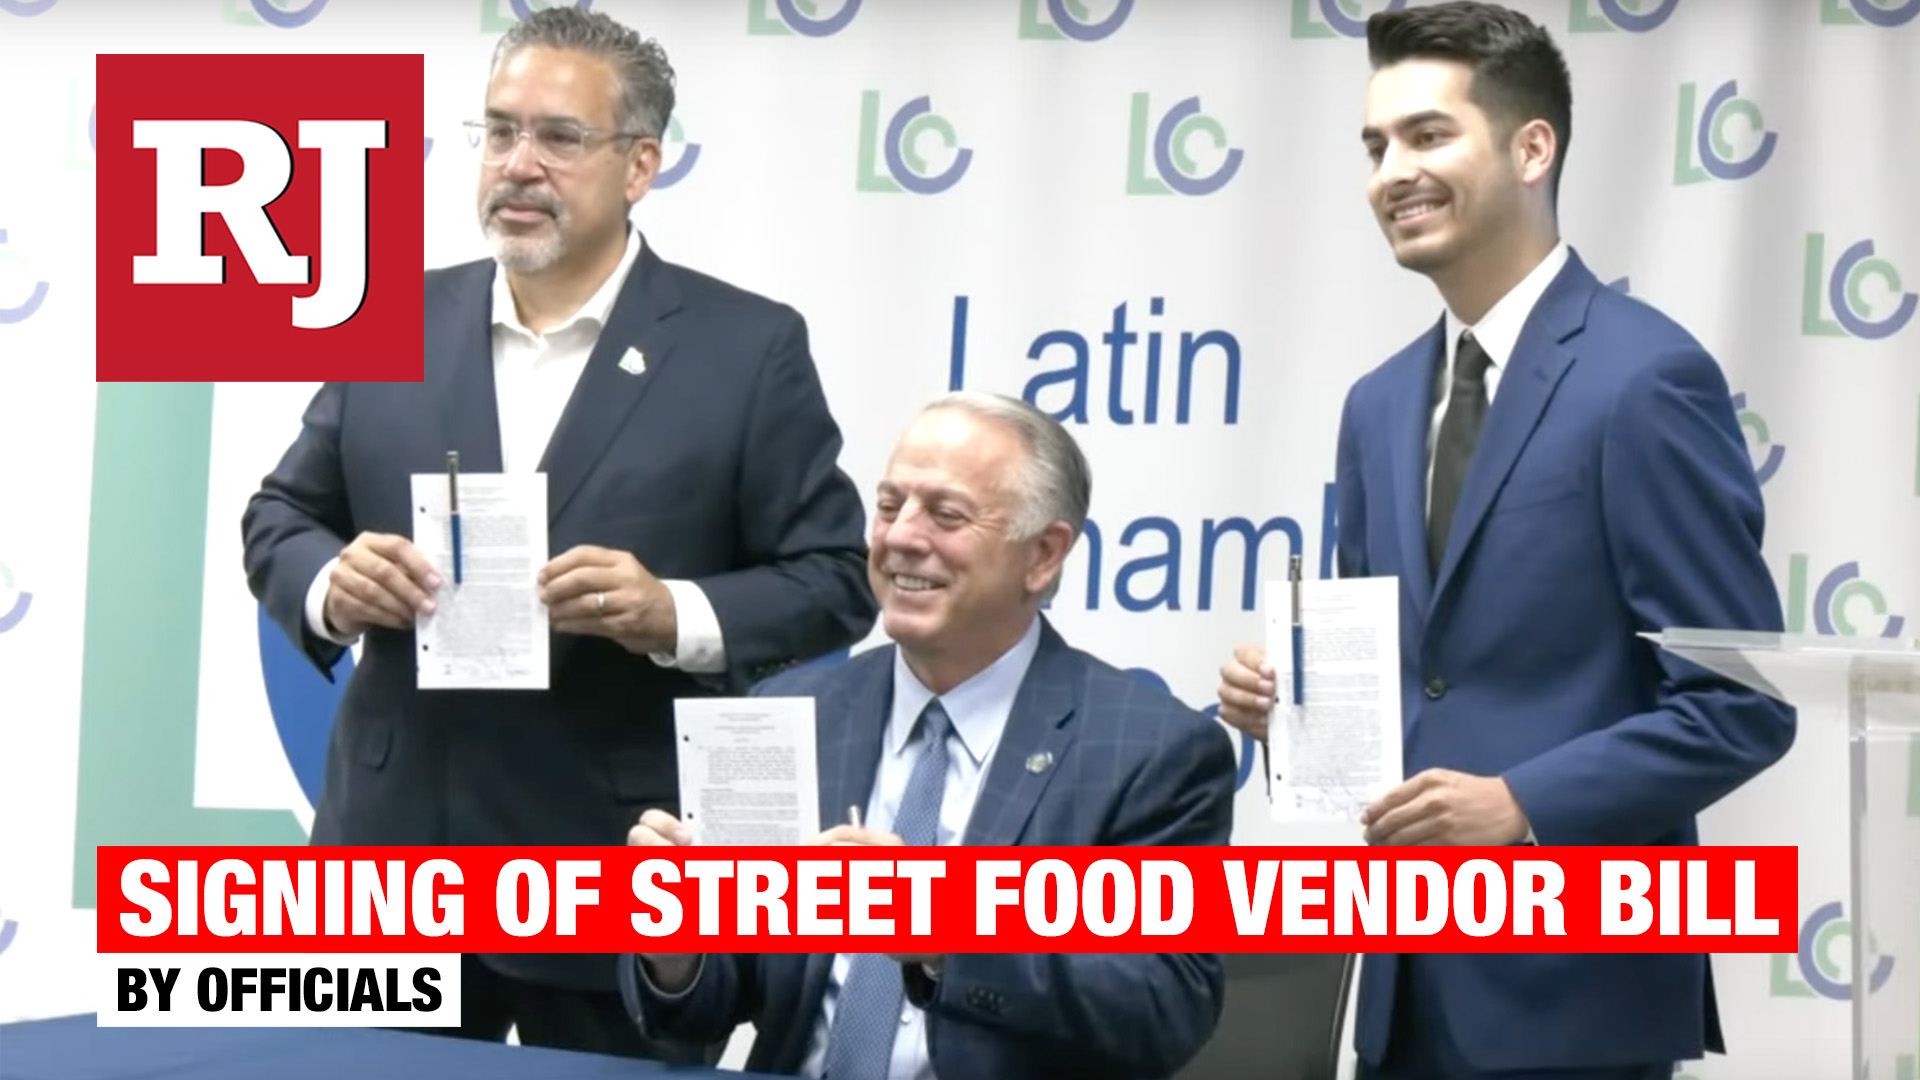 Signing of Street food vendor bill SB92